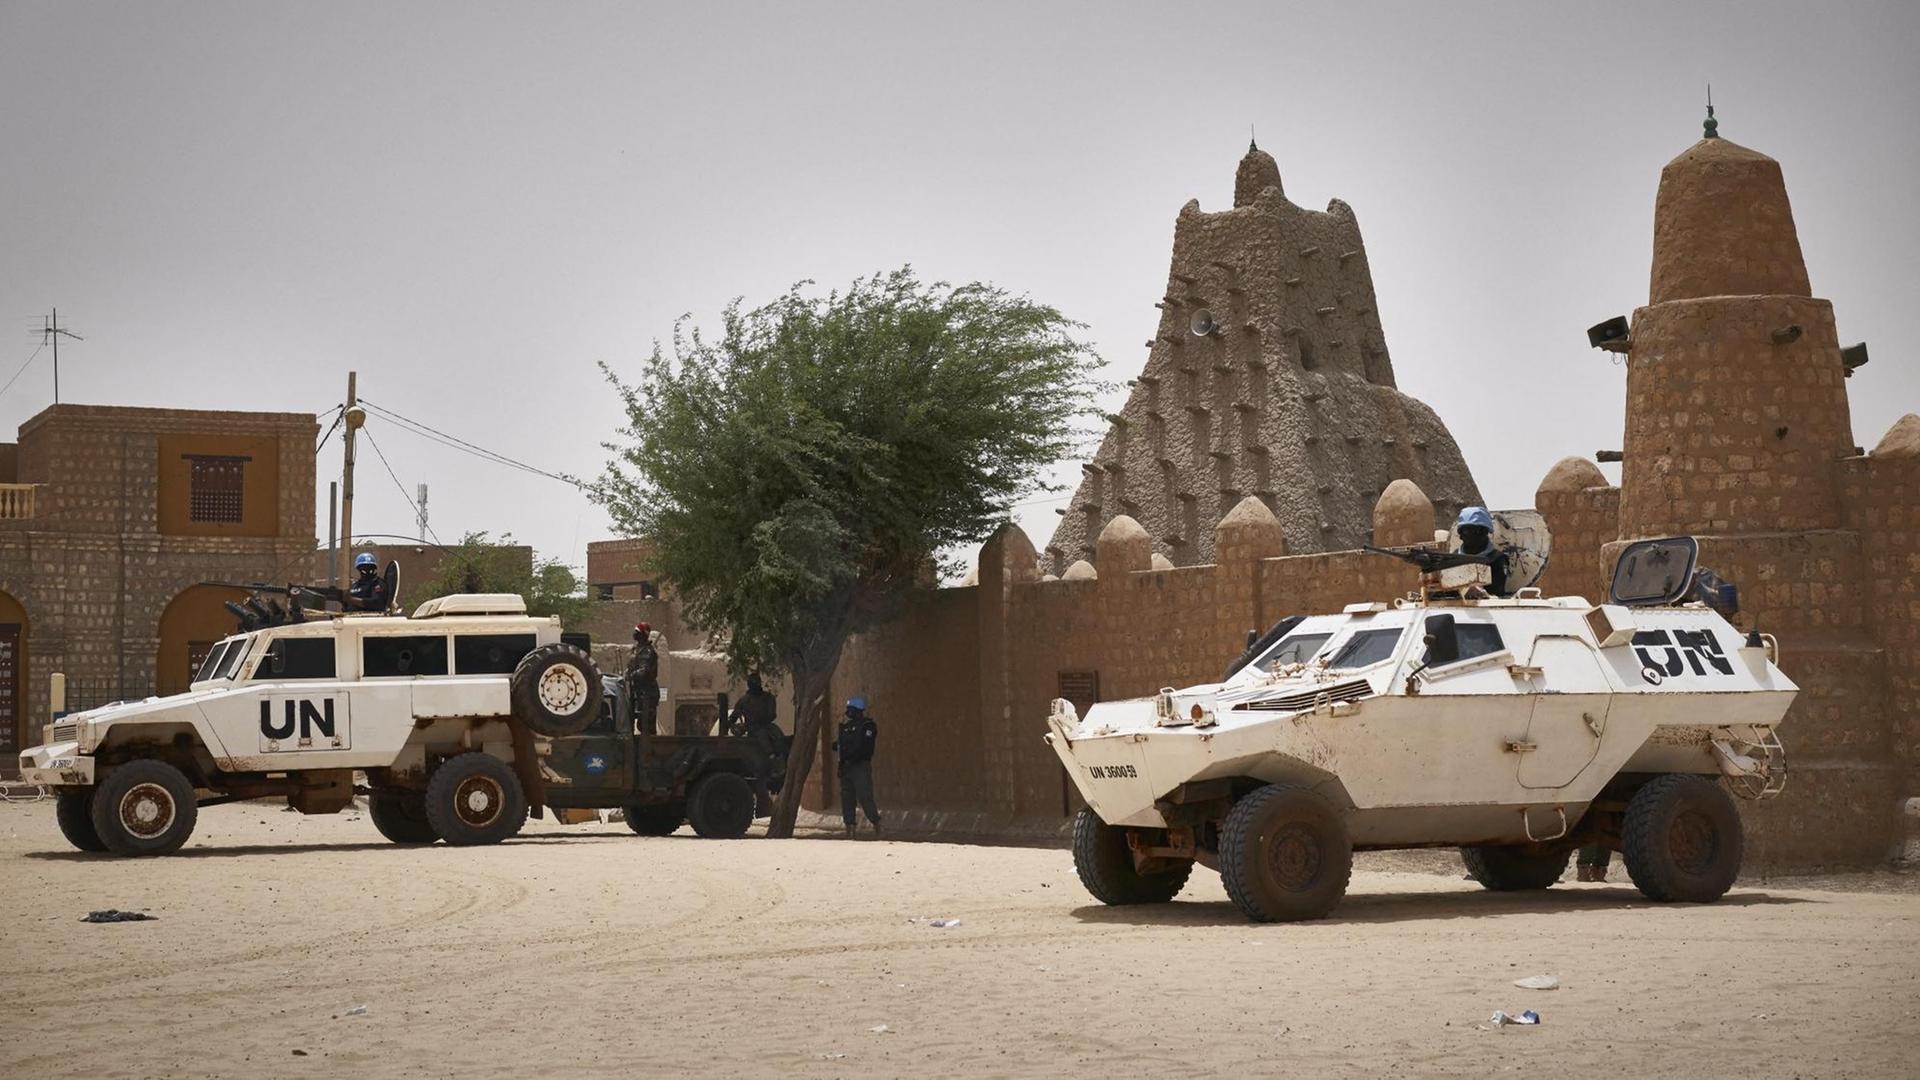 Fahrzeuge von den Vereinten Nationen vor einer Moschee in Timbuktu